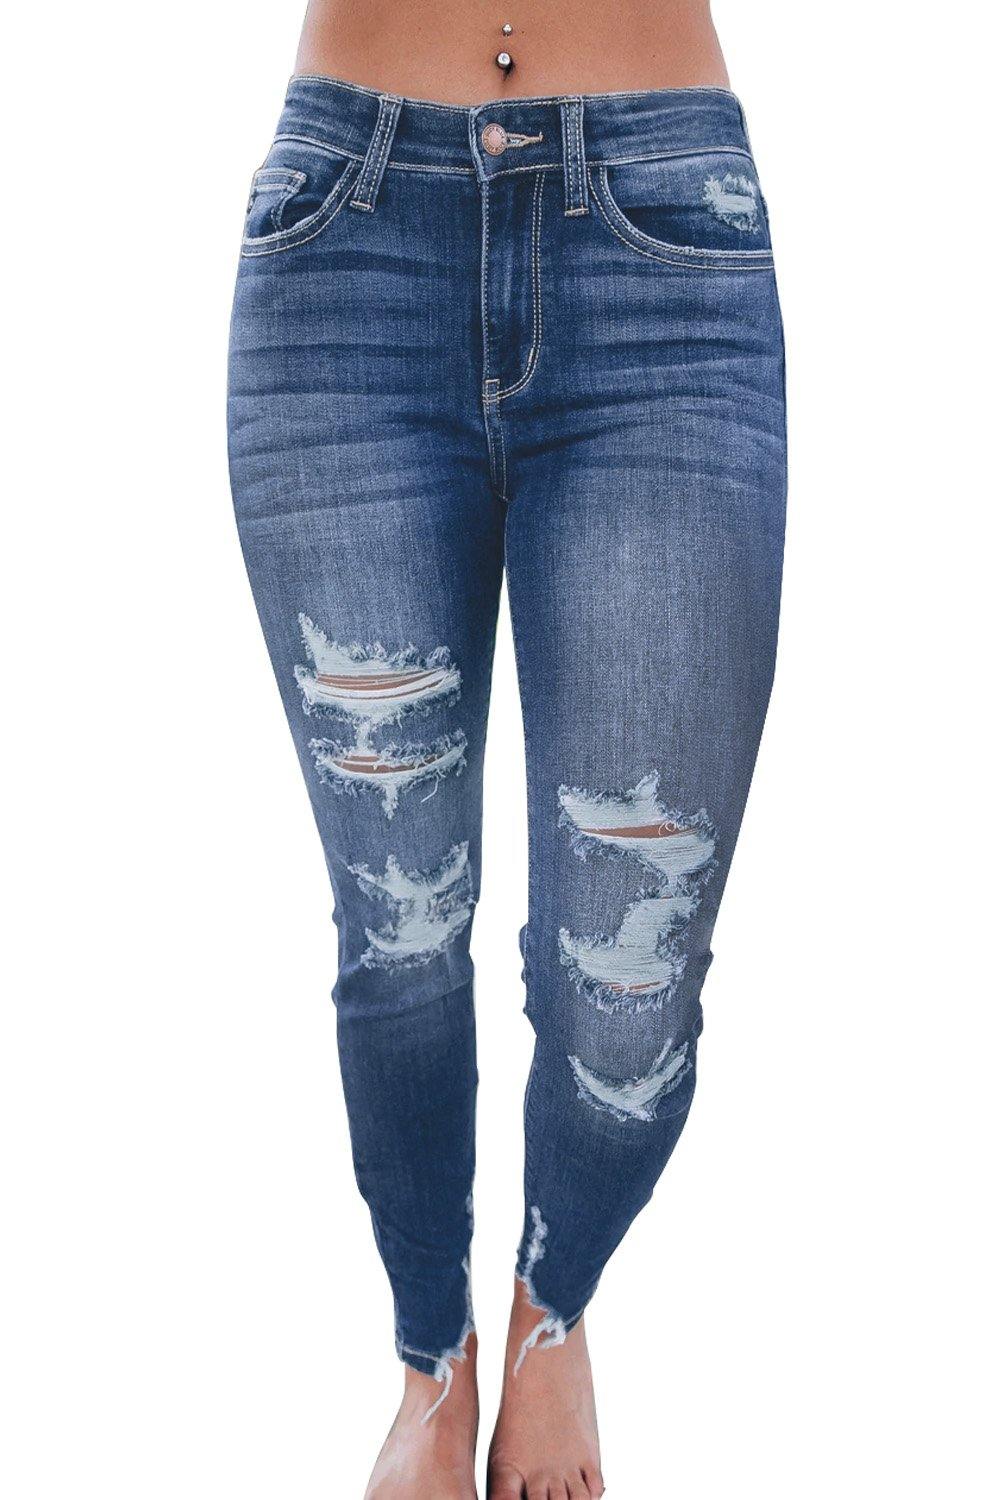 Medium Wash High Rise Distressed Skinny Jeans - L & M Kee, LLC